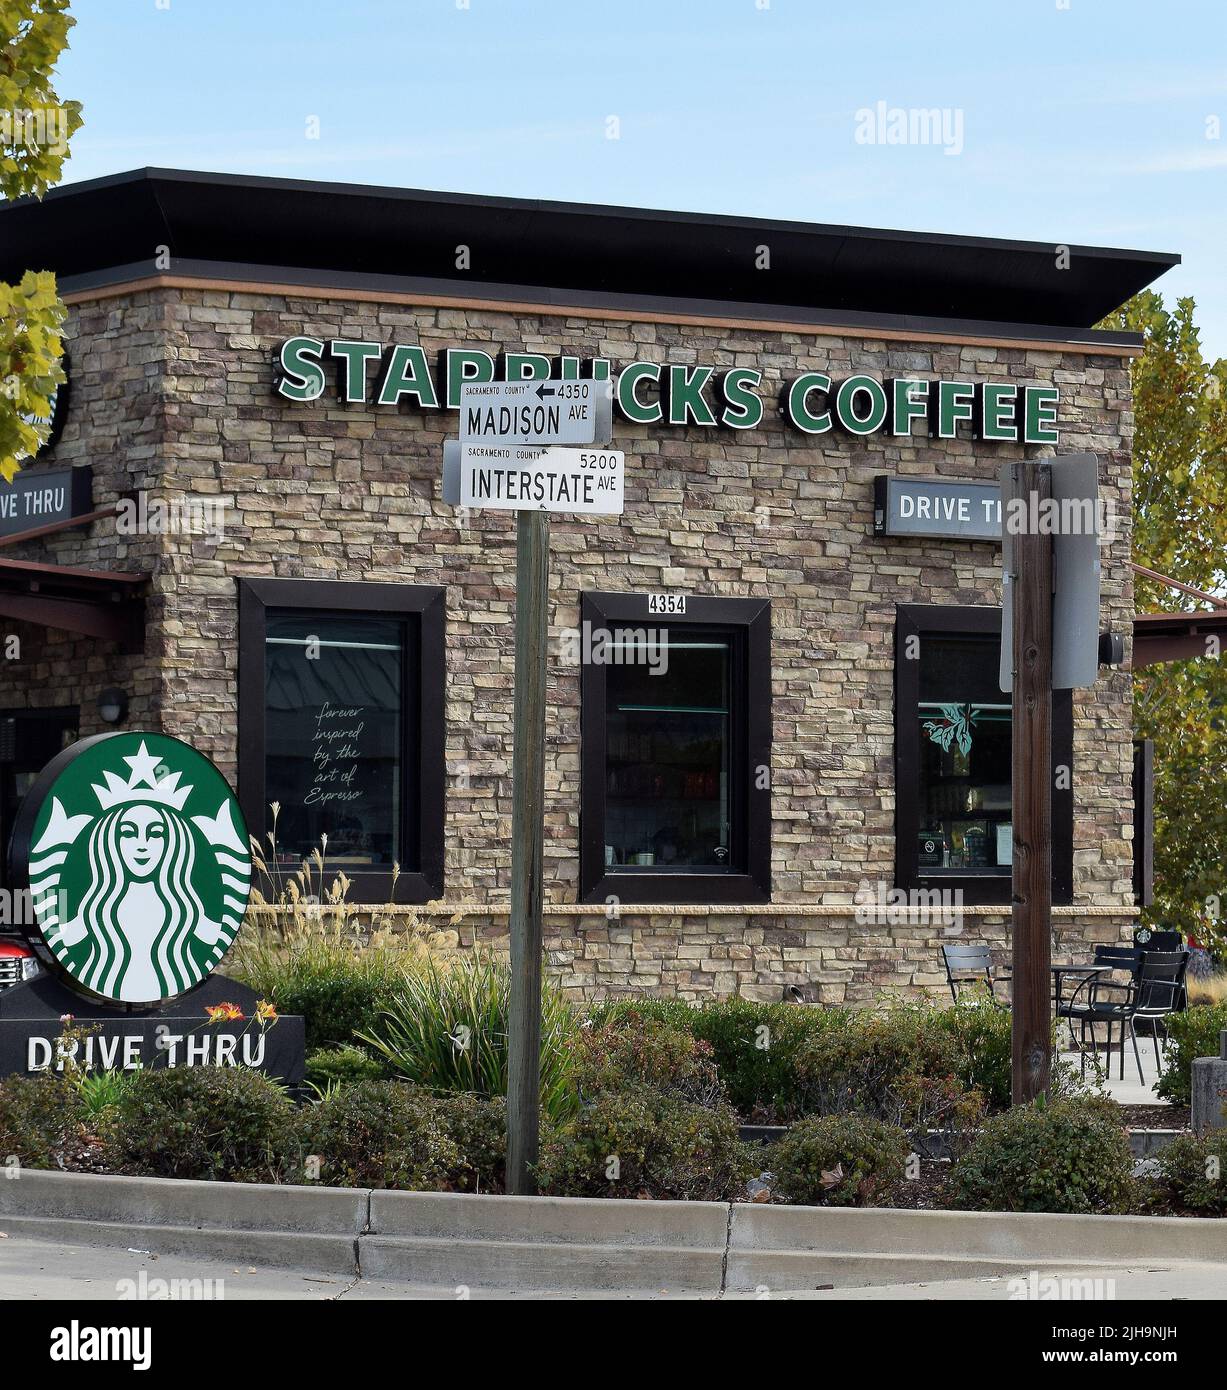 Starbucks Drive thru Coffee Shop in einem Fachmarktzentrum Stockfotografie  - Alamy